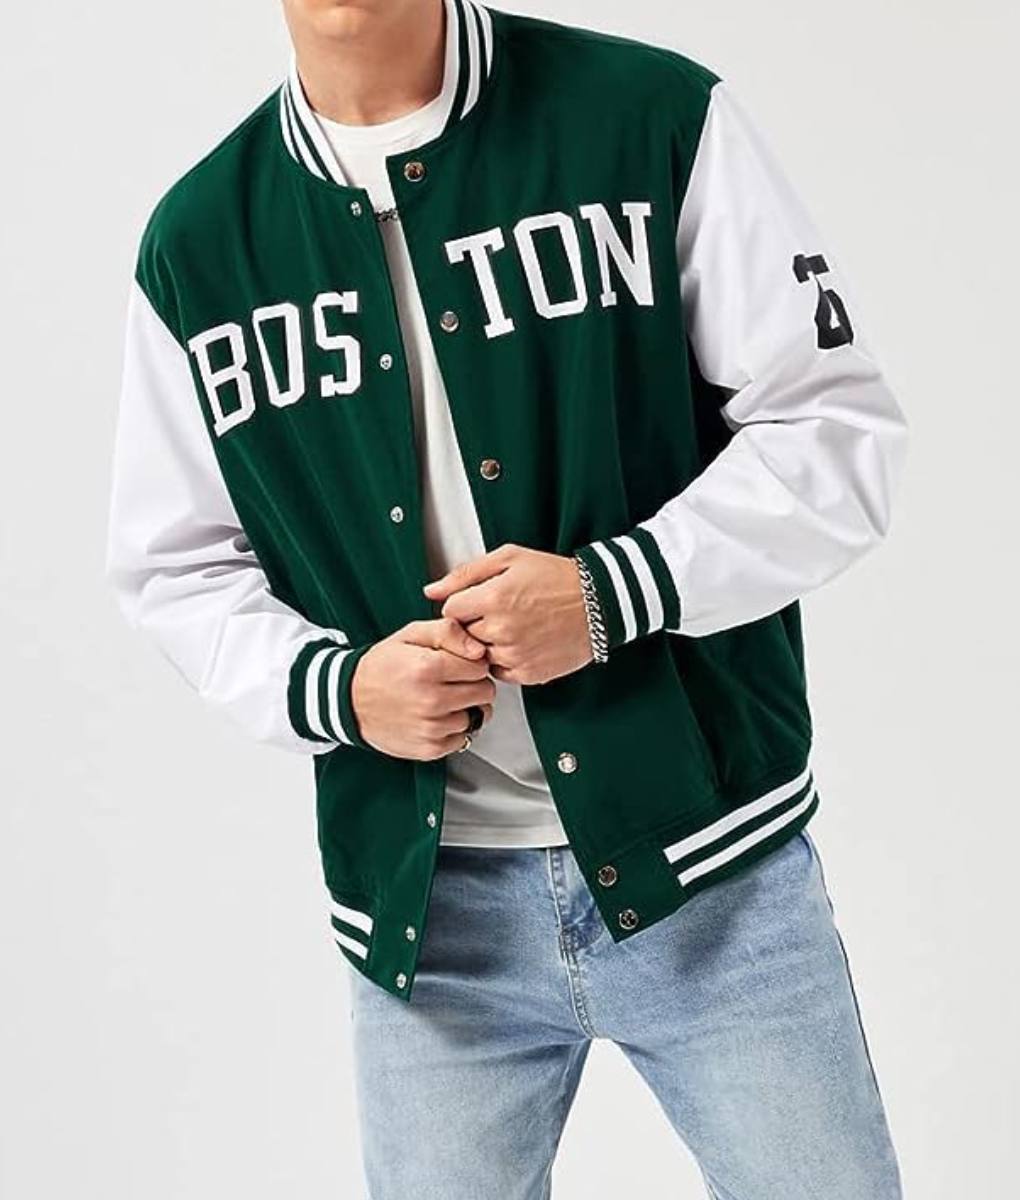 Boston Green White 25 Varsity Jacket